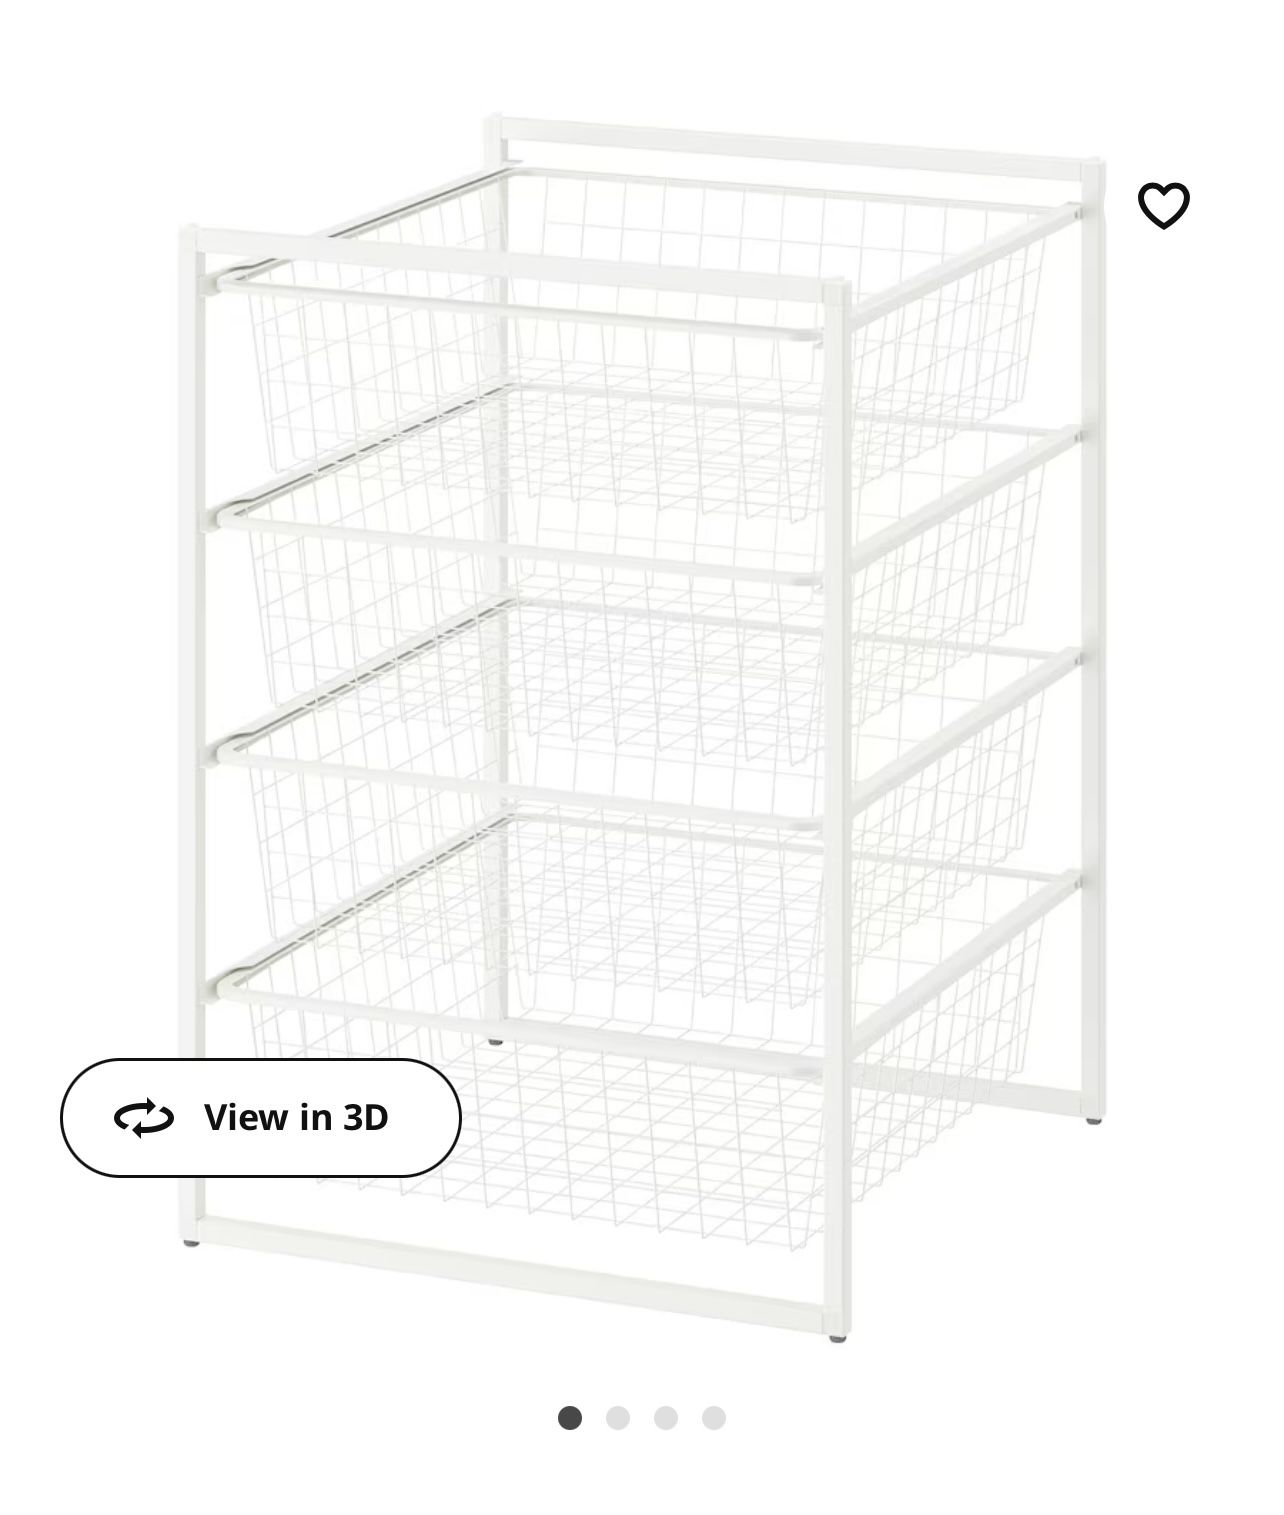 IKEA Rack Storage System 